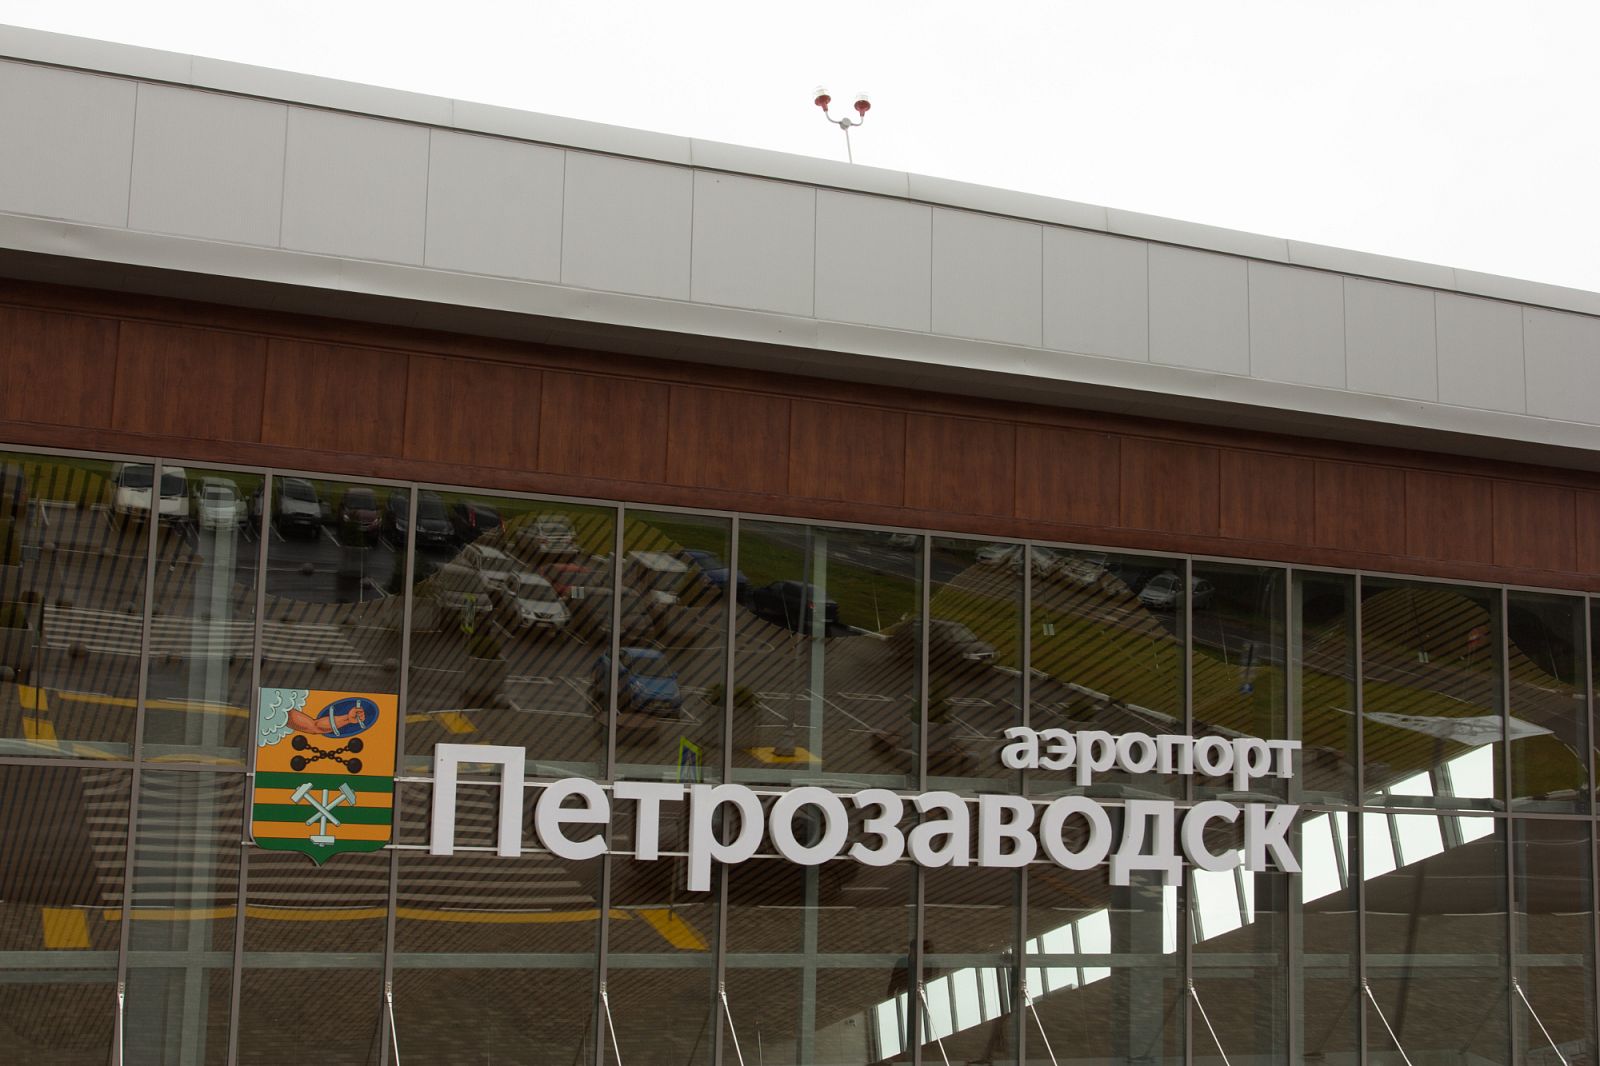 Международный аэропорт Петрозаводск - 10